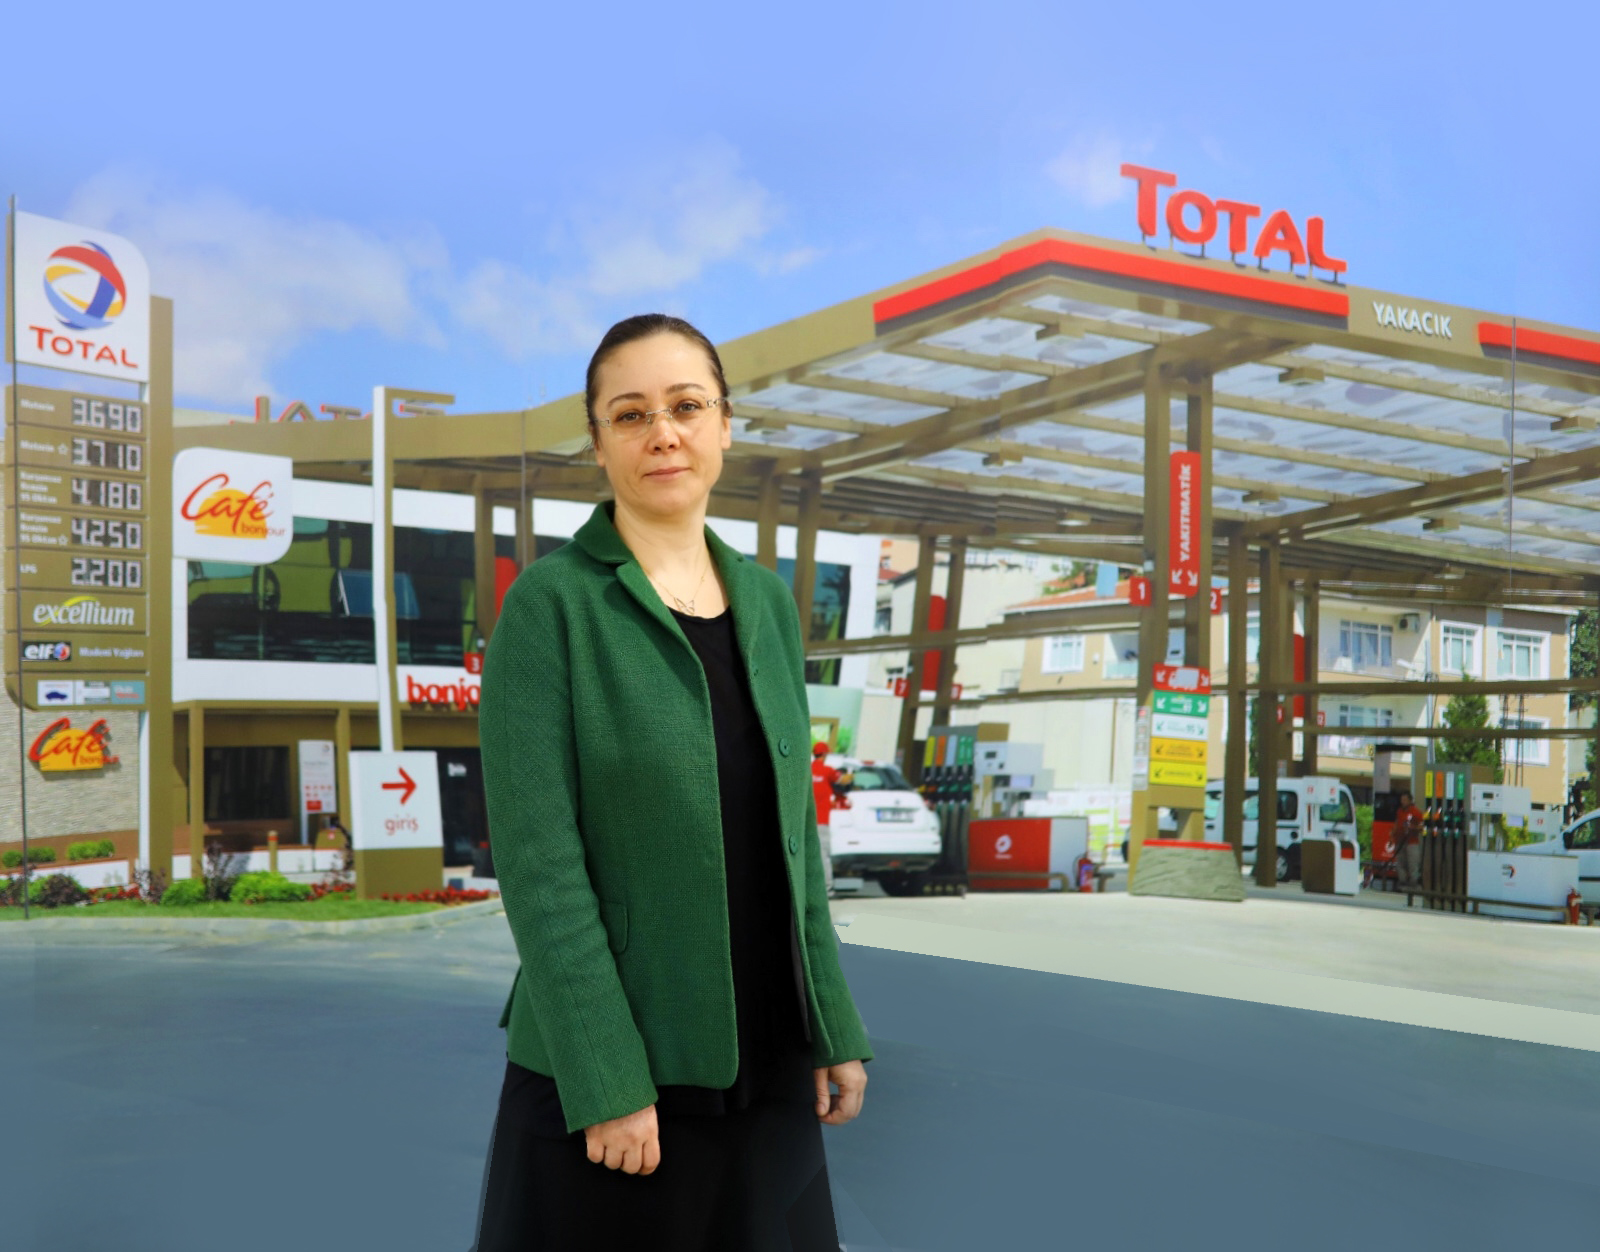  Antalya’daki Total istasyonları işaret dilinde hizmet vermeye başlıyor